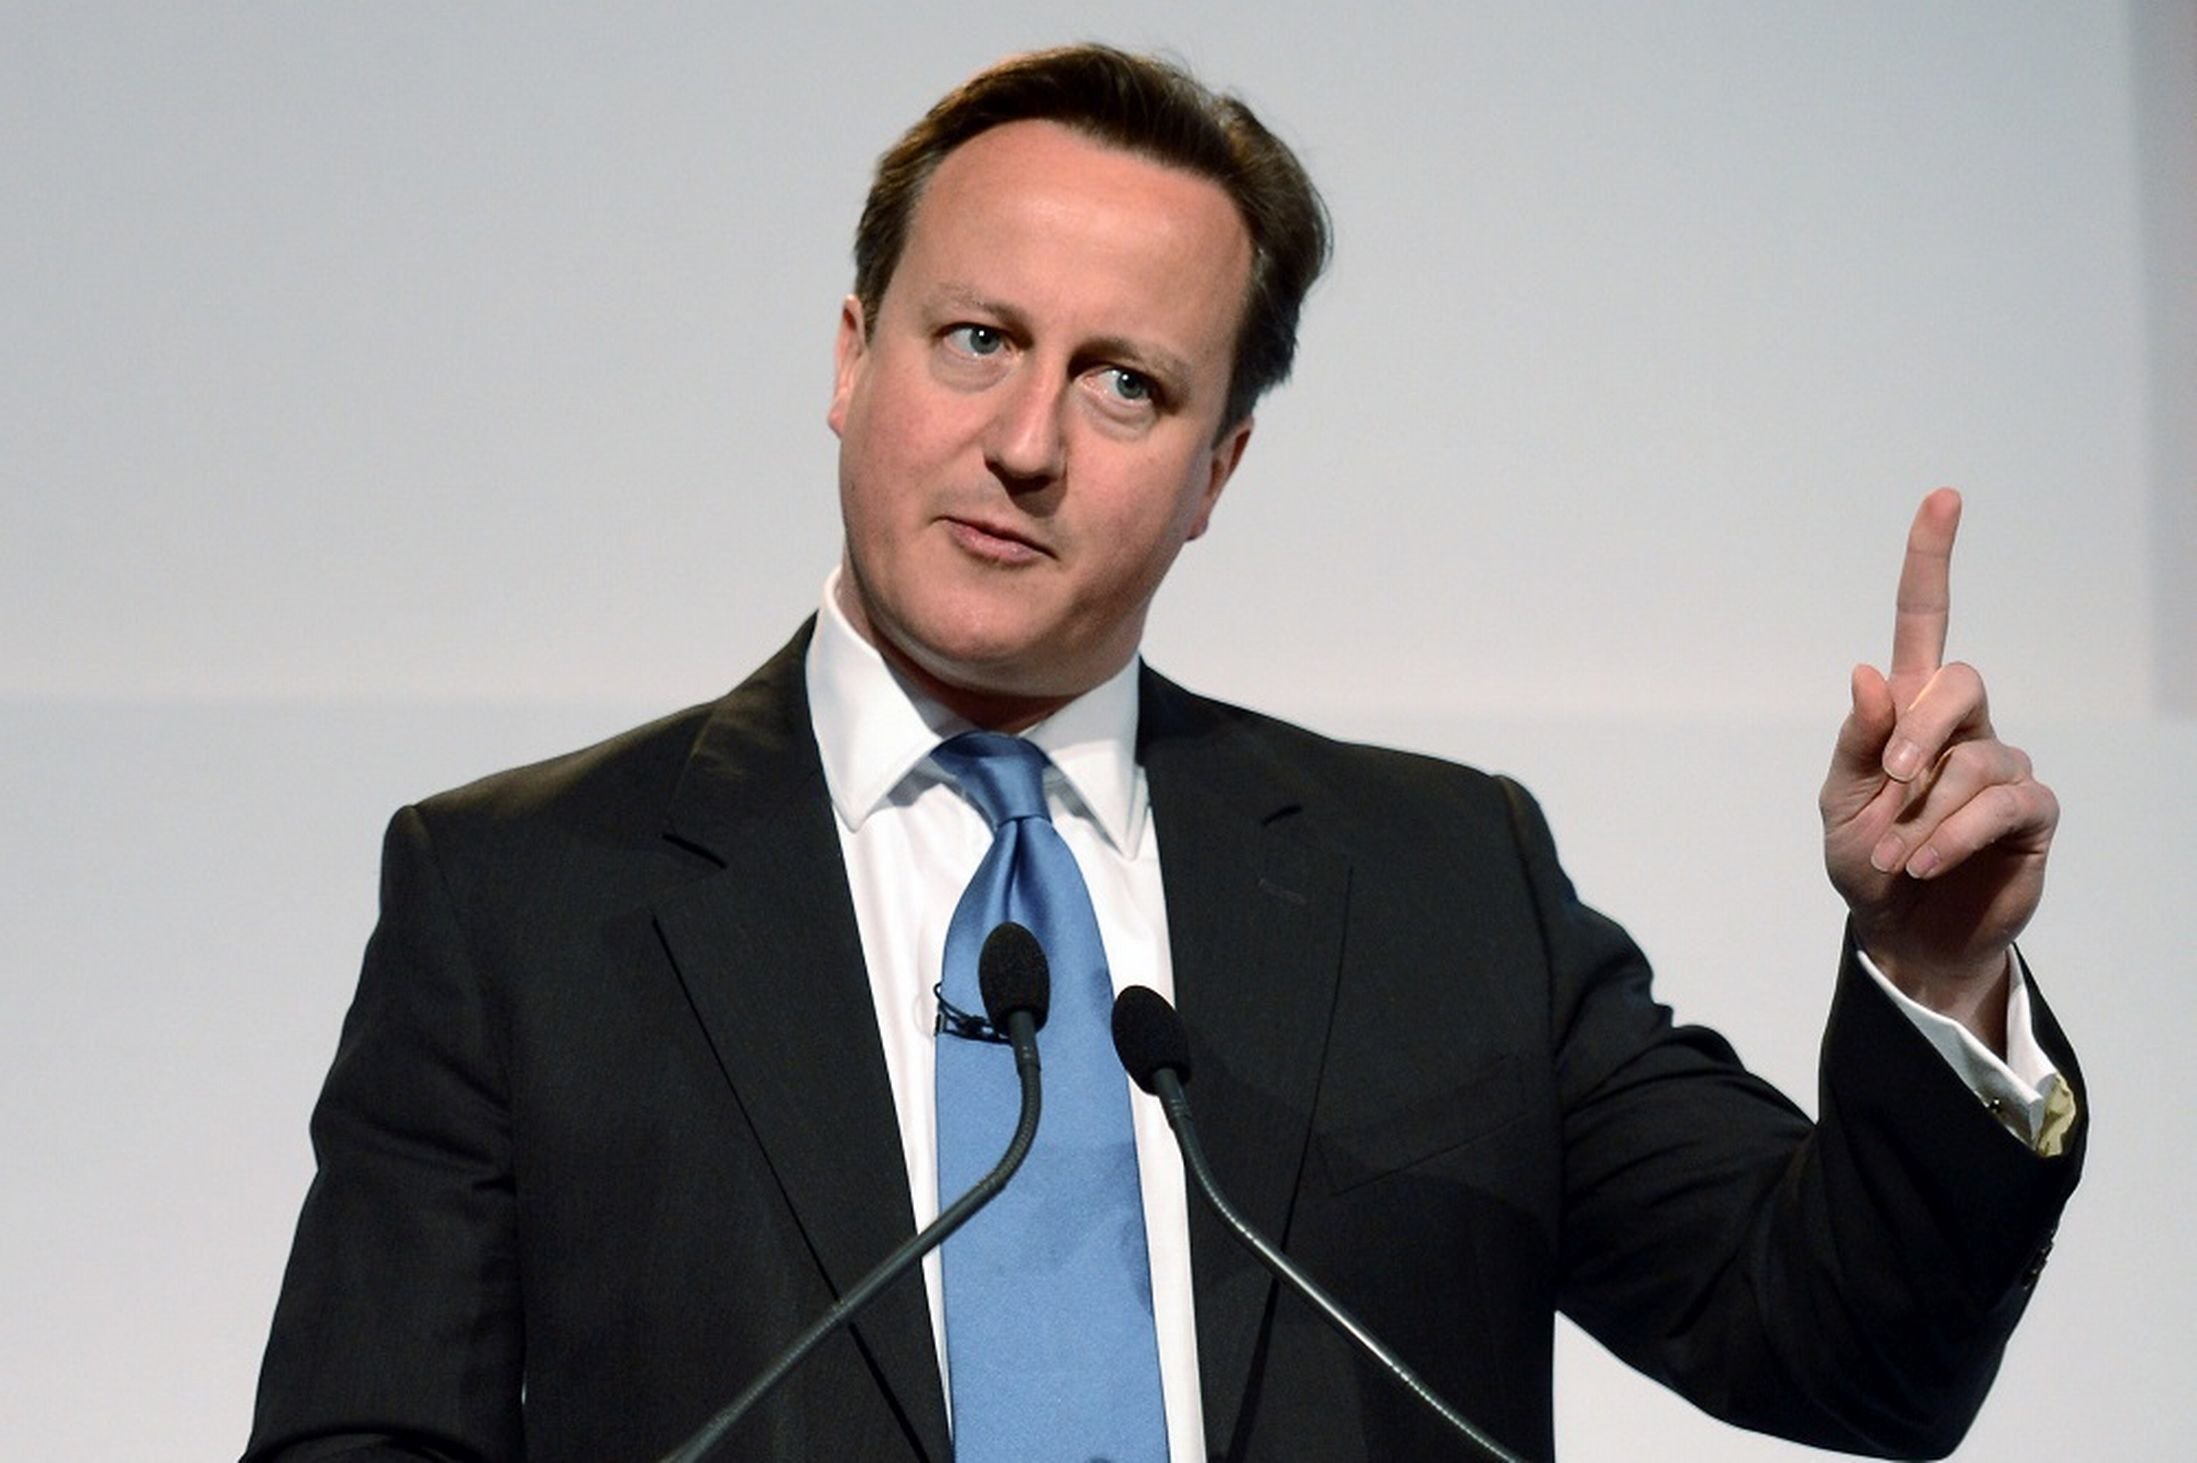 David Cameron izjavio da je njegova ranija tvrdnja o broju umjerenih pobunjenika u Siriji bila pogrešna